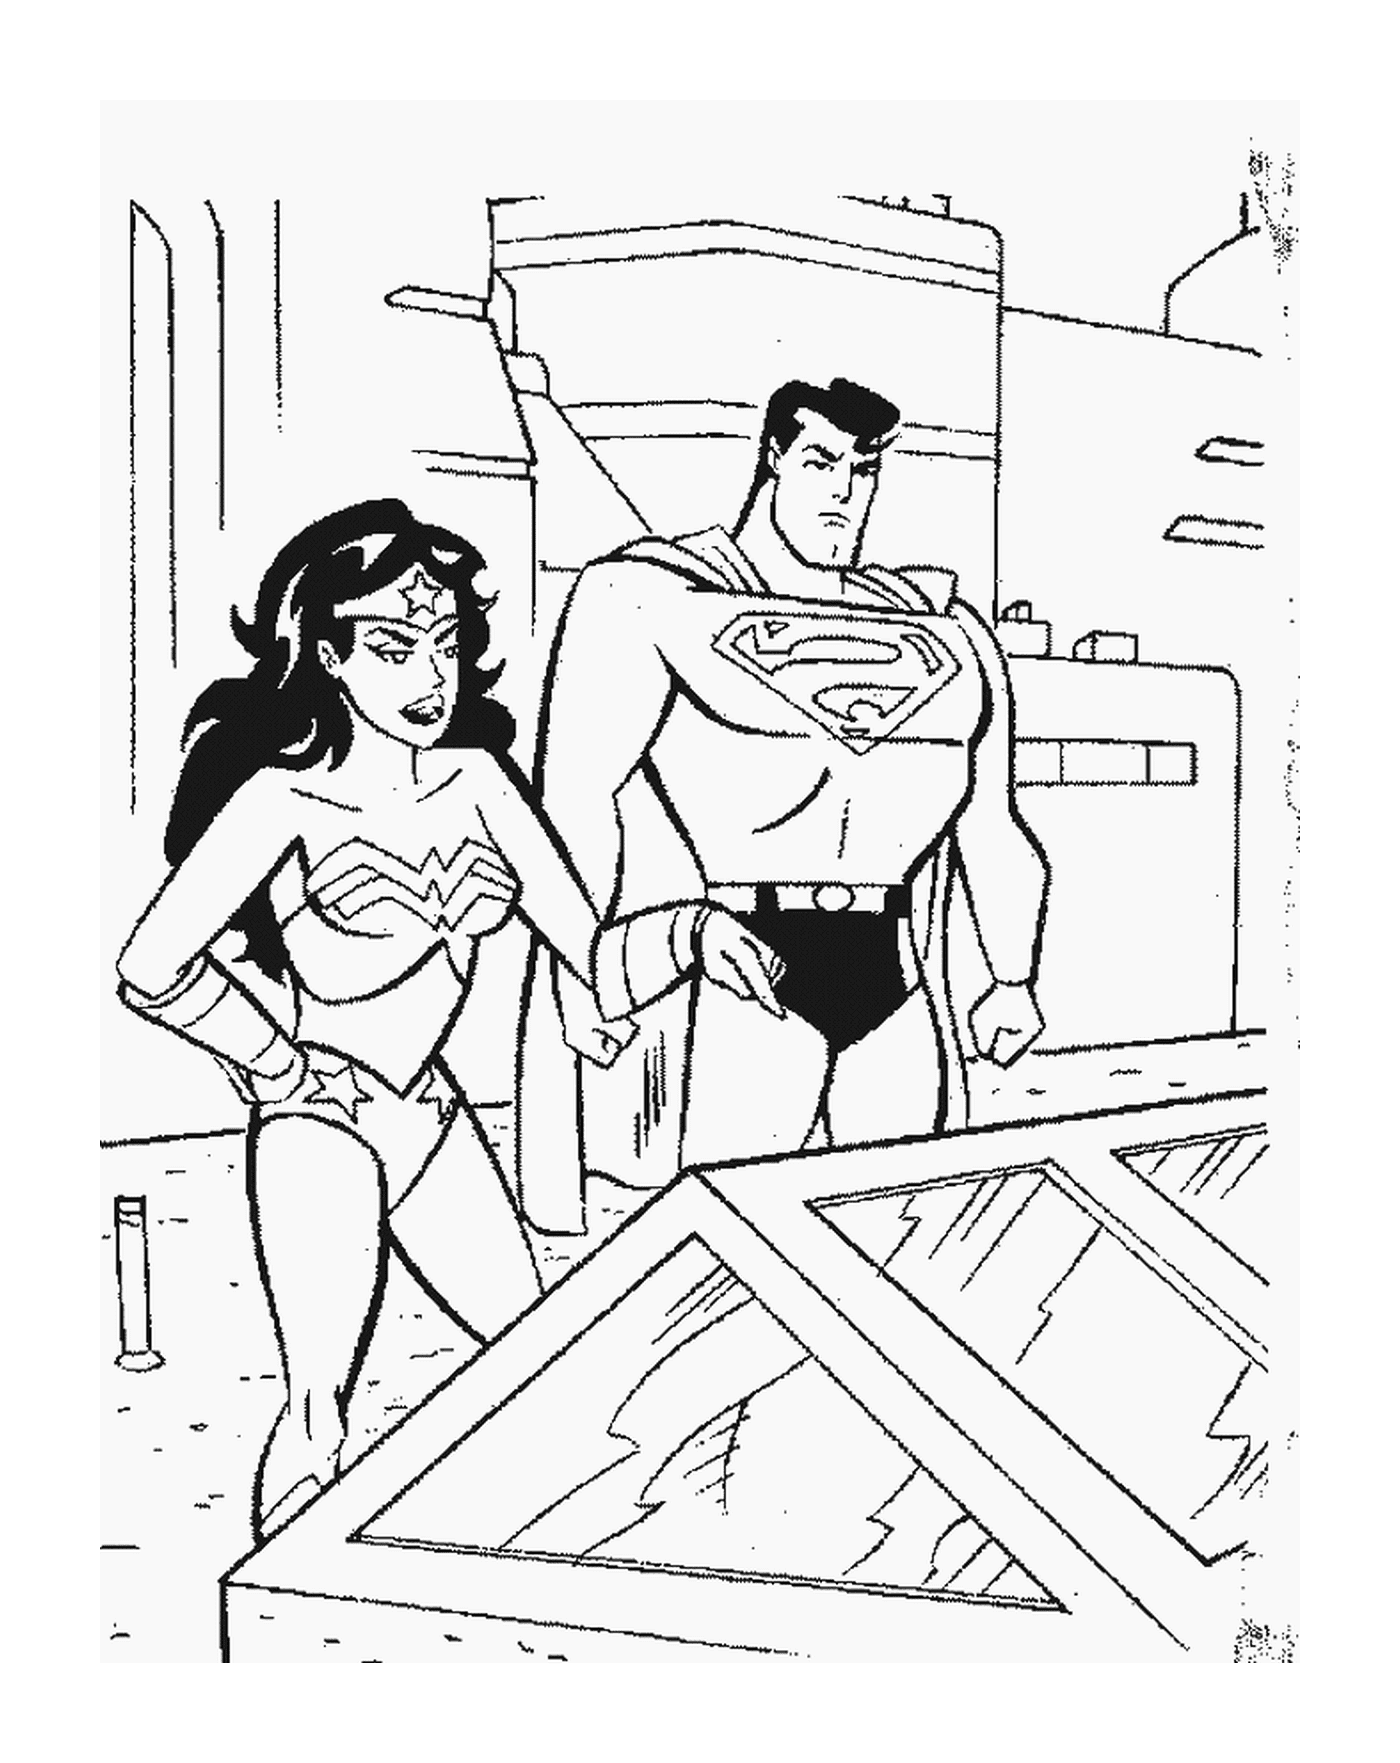  सुपरमैन और अद्भुत स्त्री 